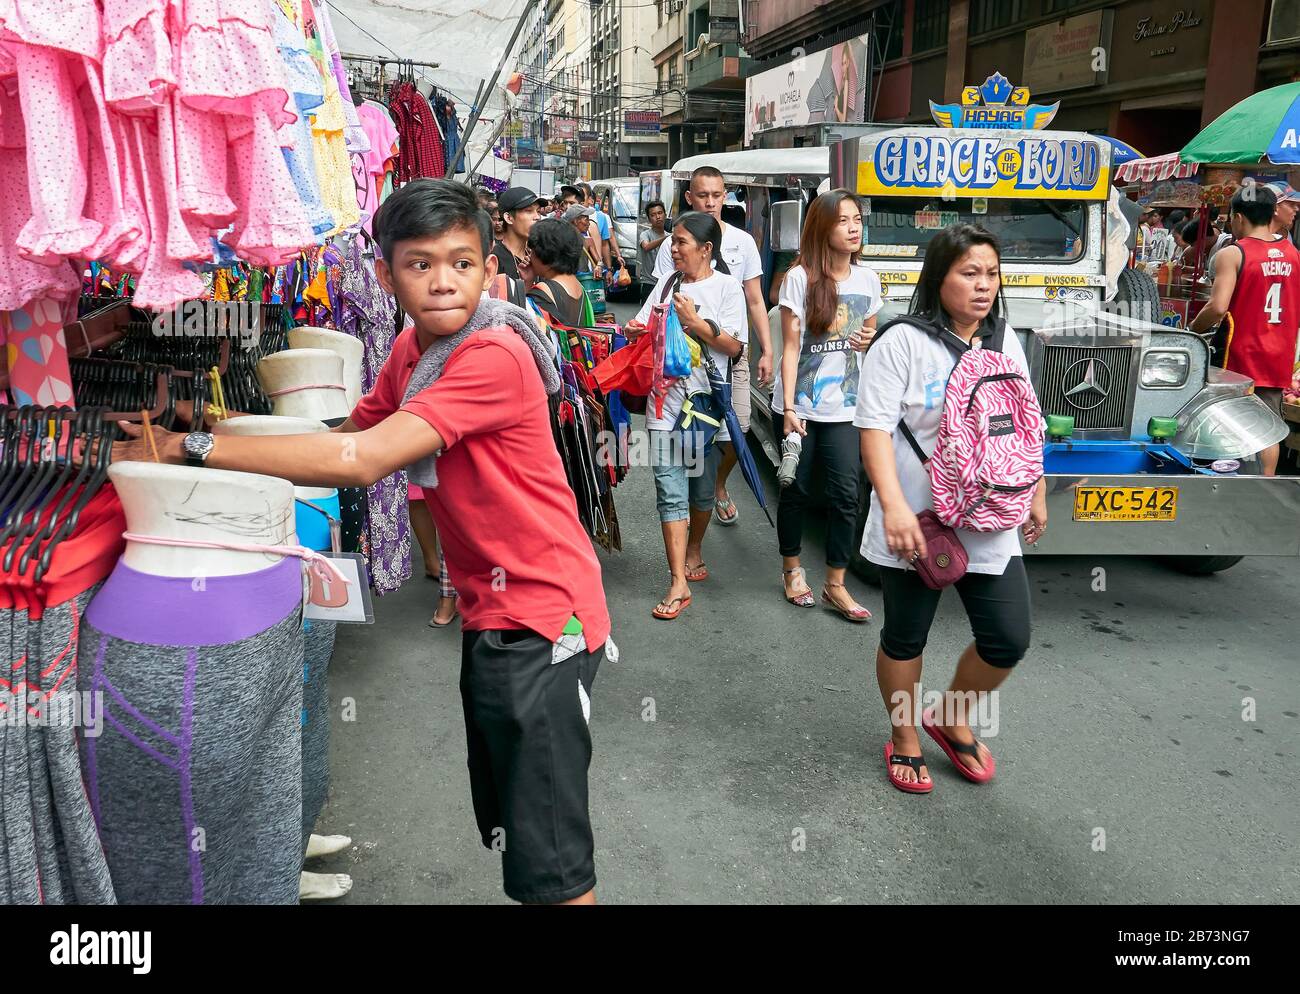 Divisoria Market, Manila, Philippinen: Kleiner Junge, der ein Bekleidungsgeschäft besucht, während Käufer neben einem philippinischen Jeepney laufen Stockfoto